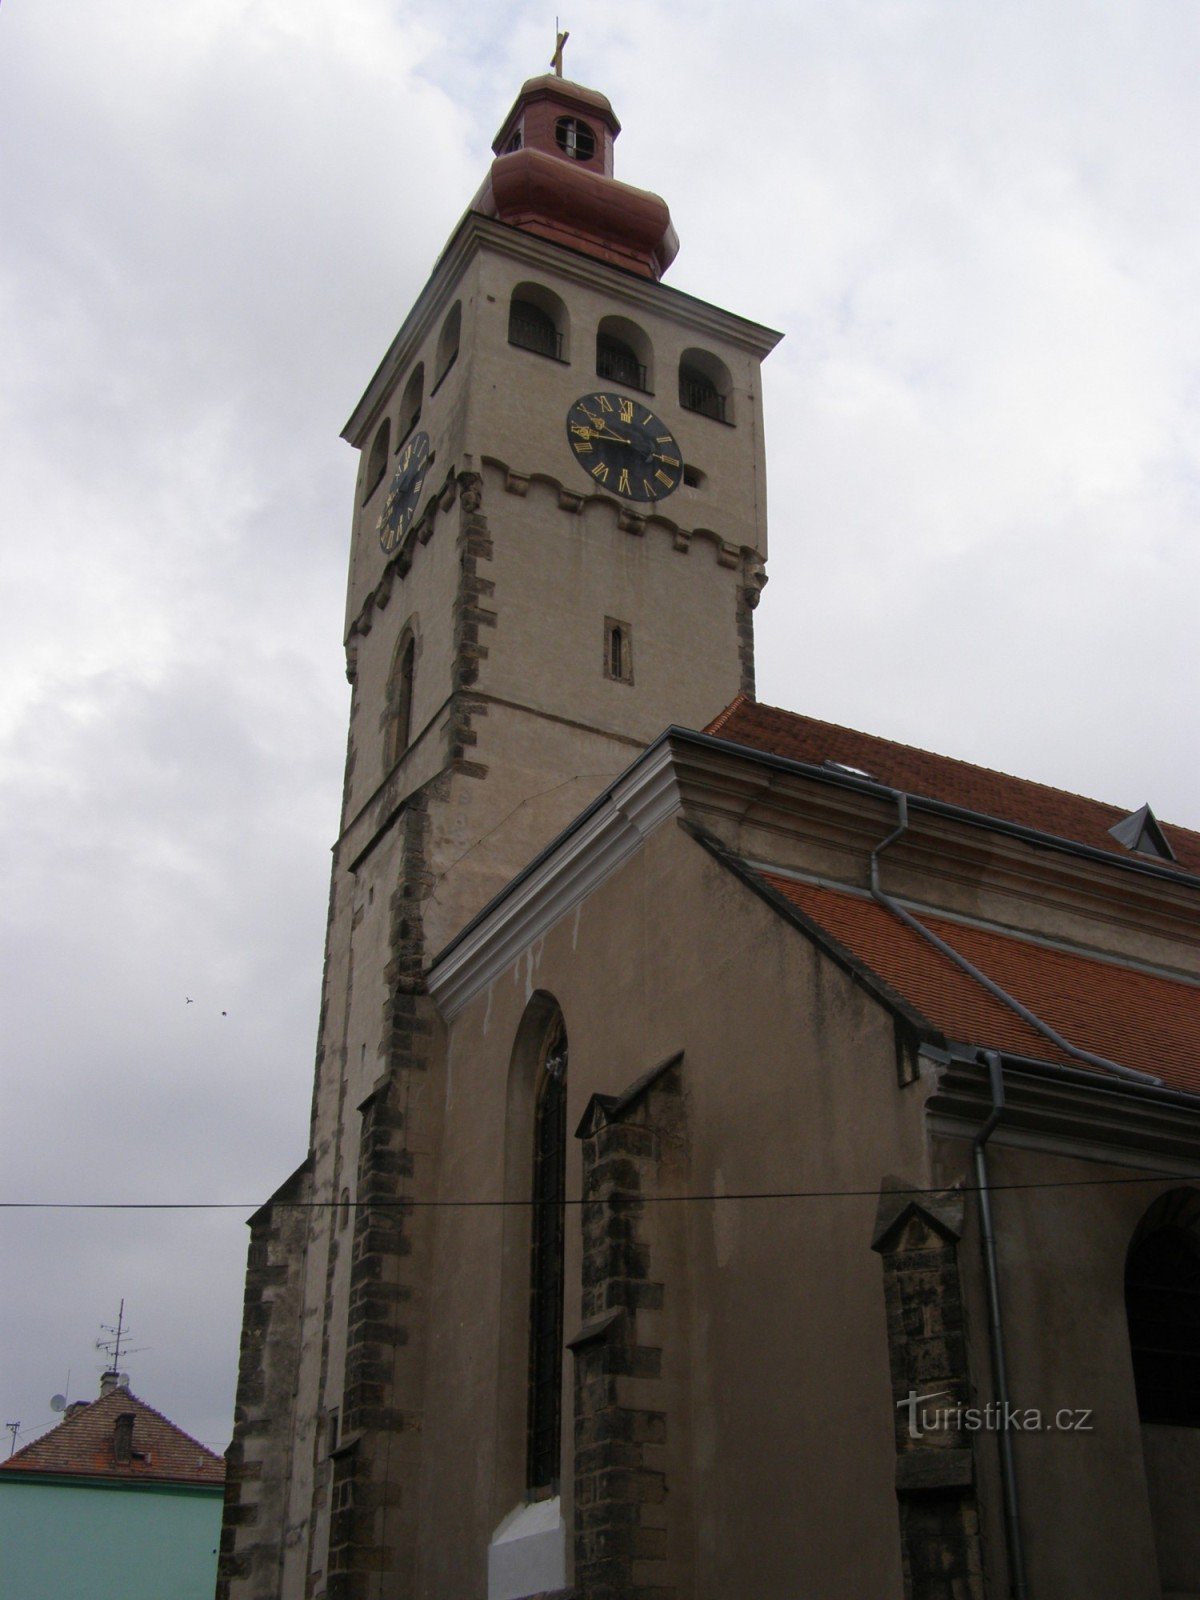 Nový Bydžov - igreja de St. Lourenço